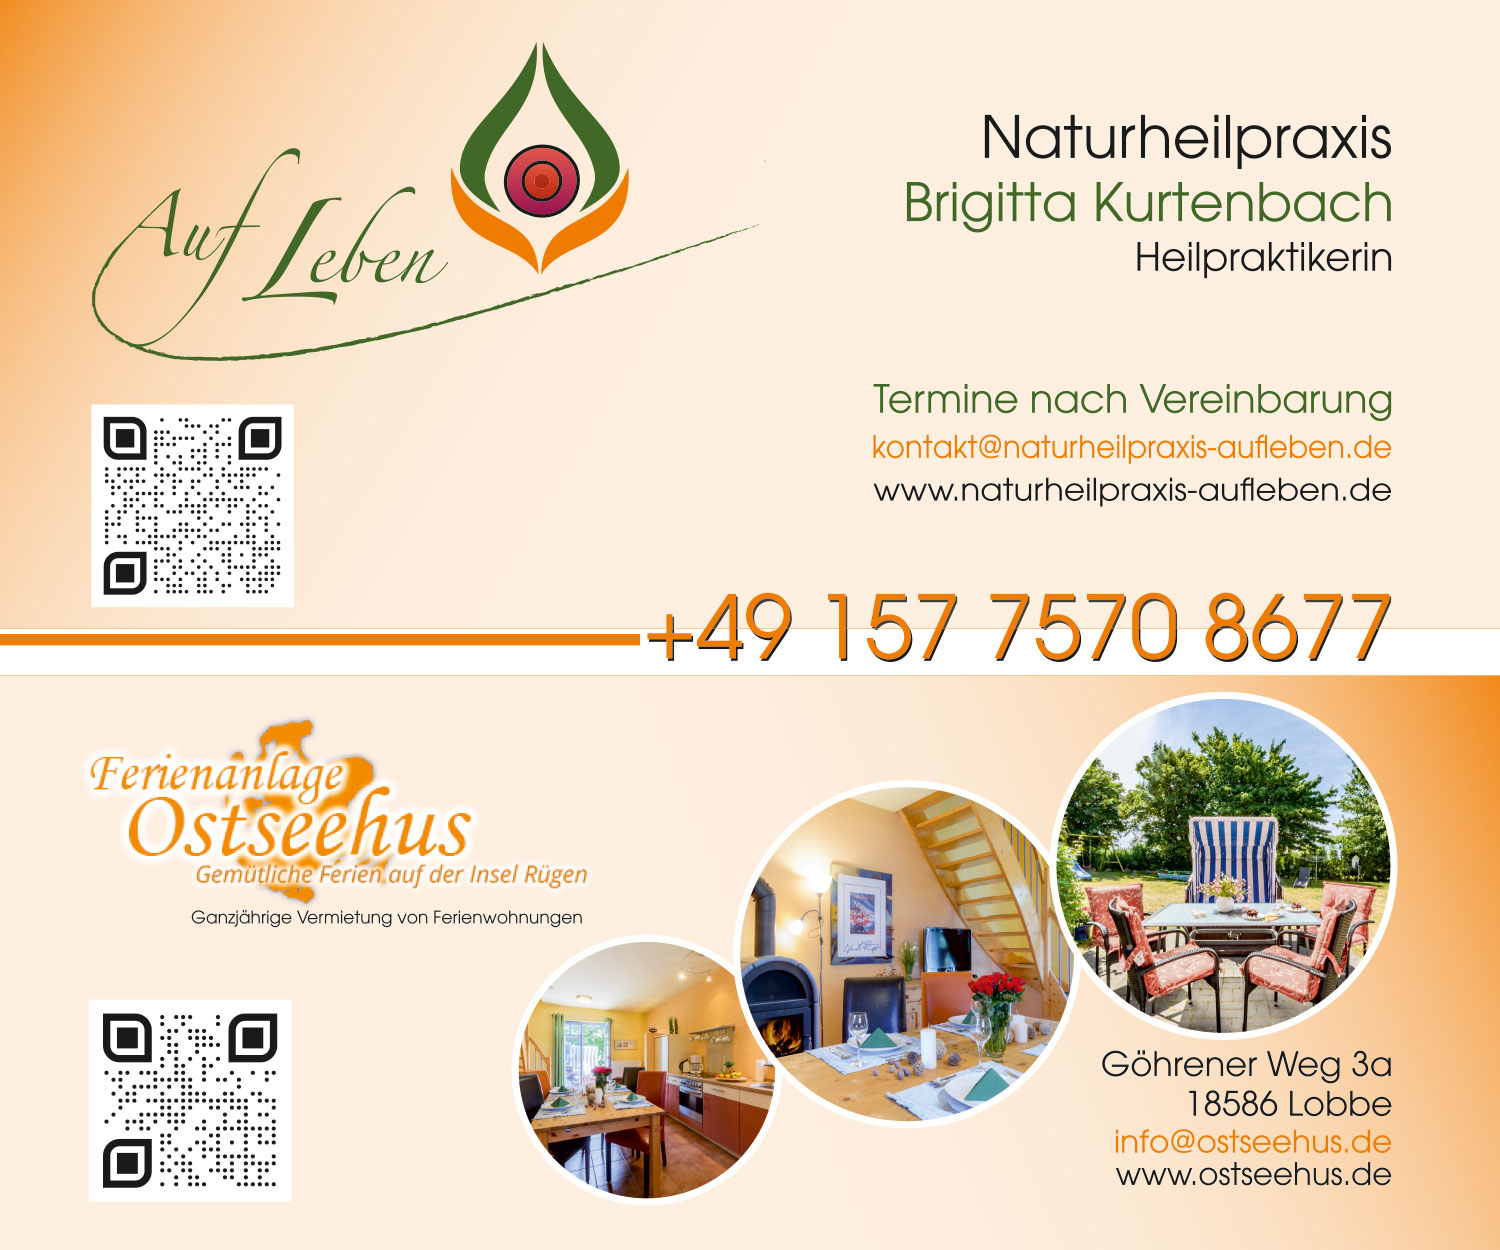 Flyer, Firmenschild und Fotografie - Grafikdesign Referenz - Ferienanlage Ostseehus